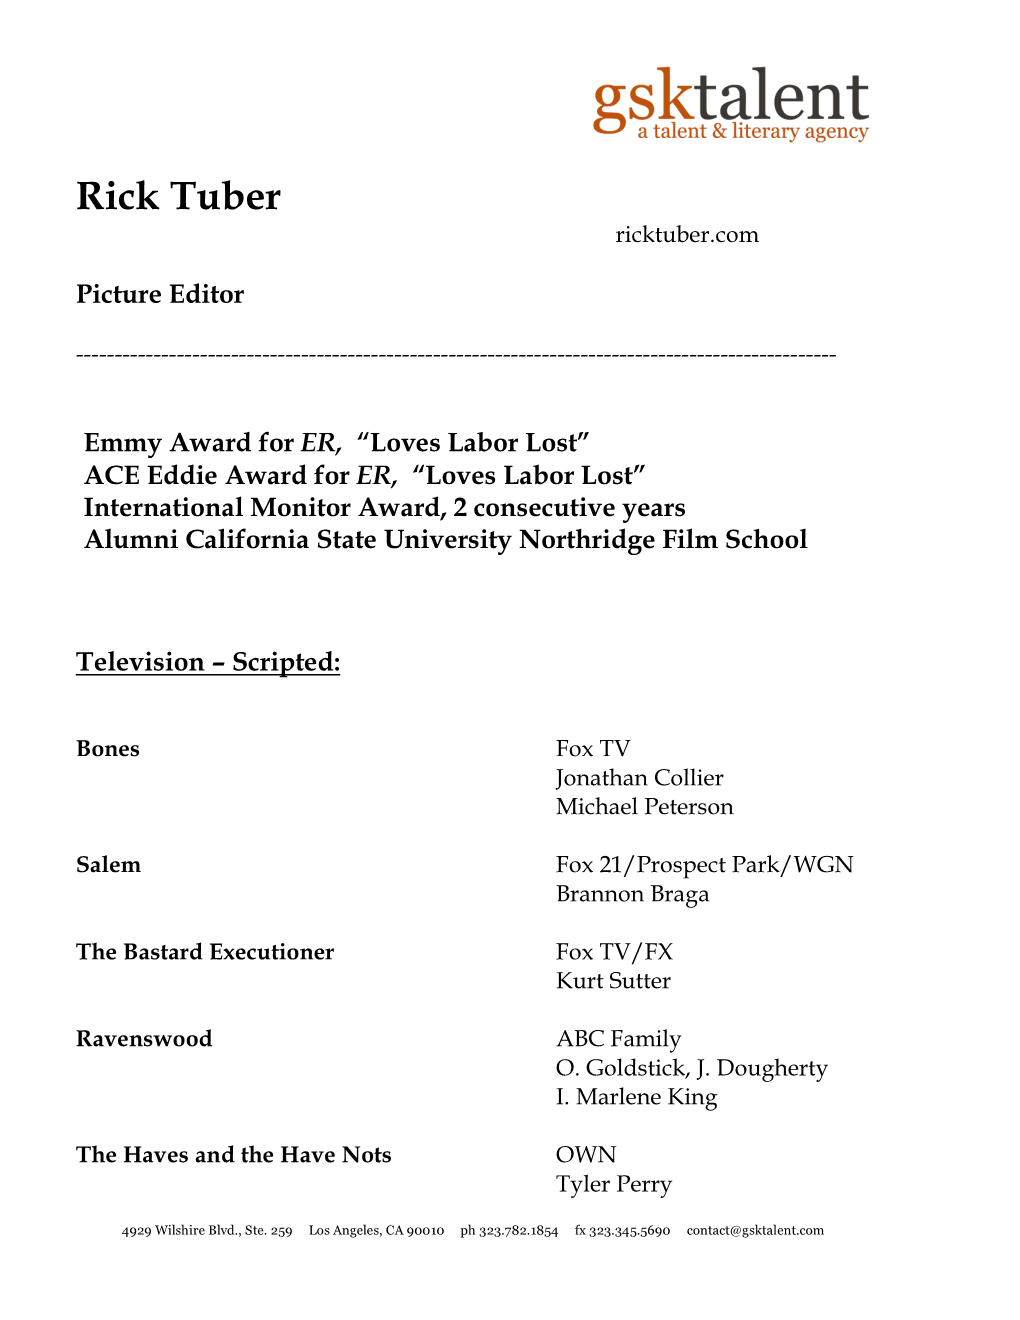 Rick Tuber Resume